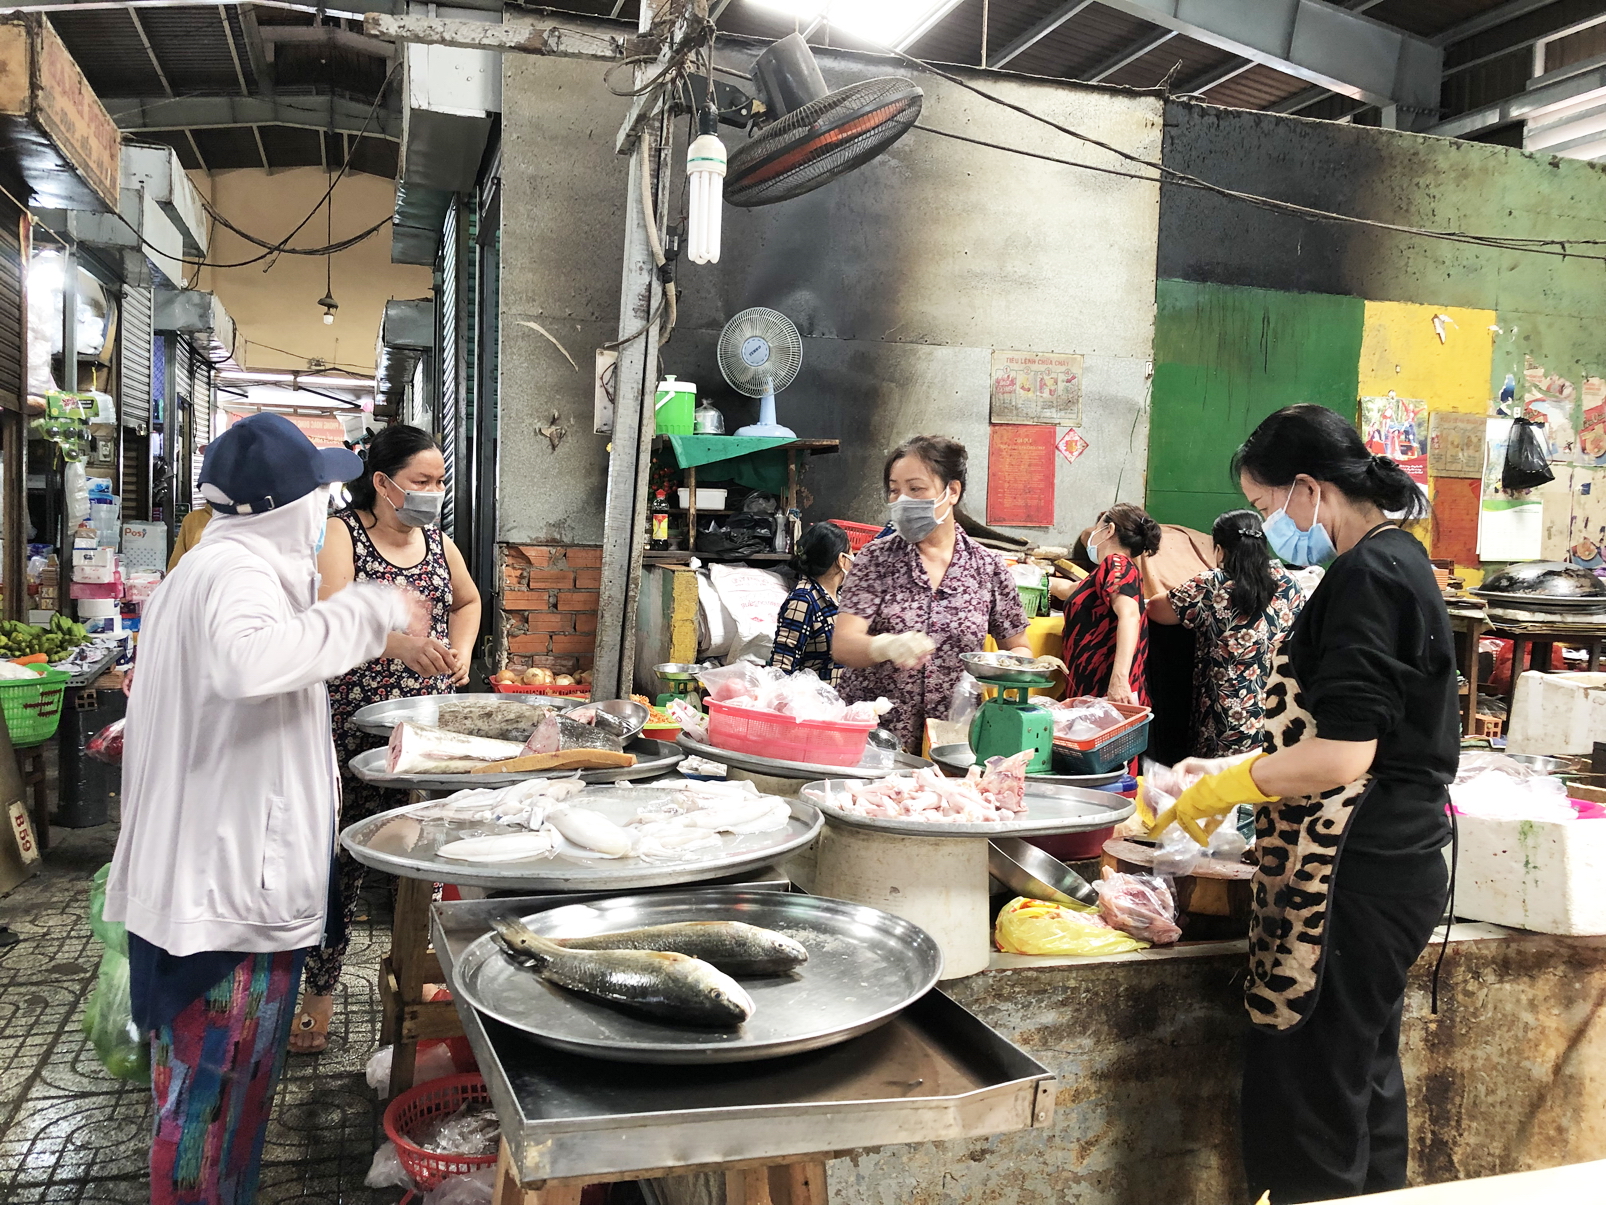 Thịt cá, tại chợ truyền thống vẫn dồi dào. Ảnh chụp tại chợ P.11, Q.Tân Bình, TP.HCM sáng 8/7 - ẢNH: T.HOA